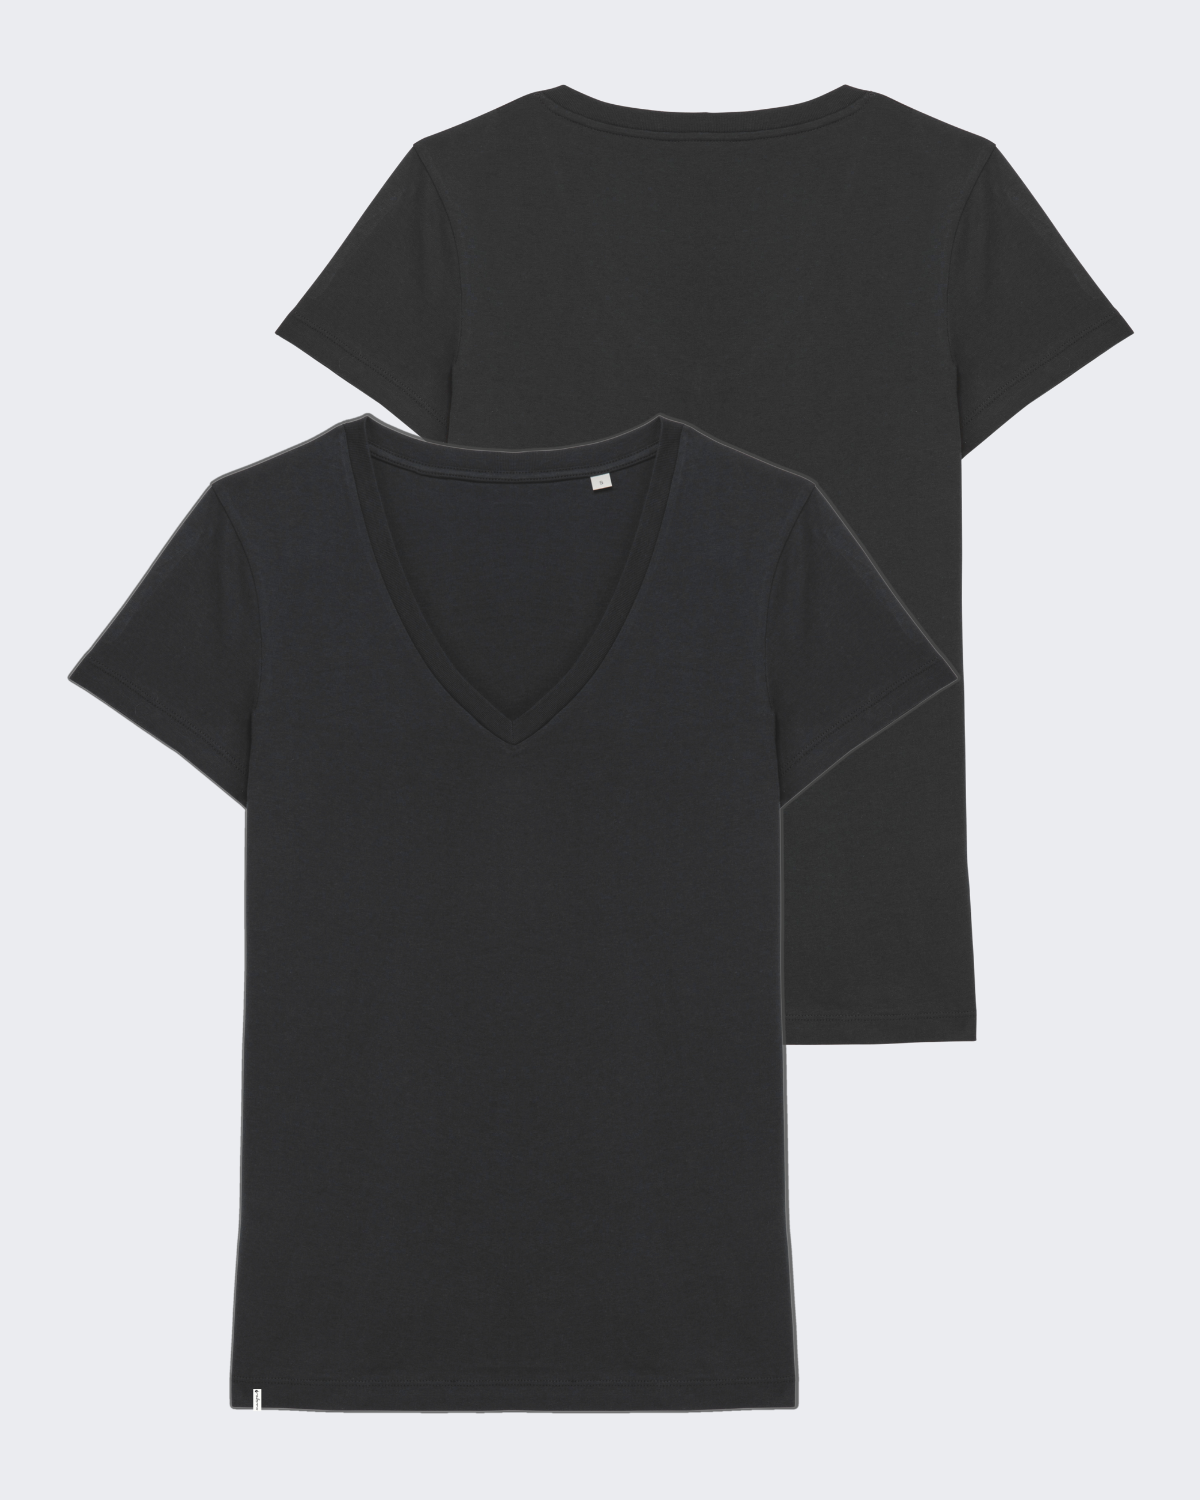 Damen-Shirt "Black" - V-Ausschnitt